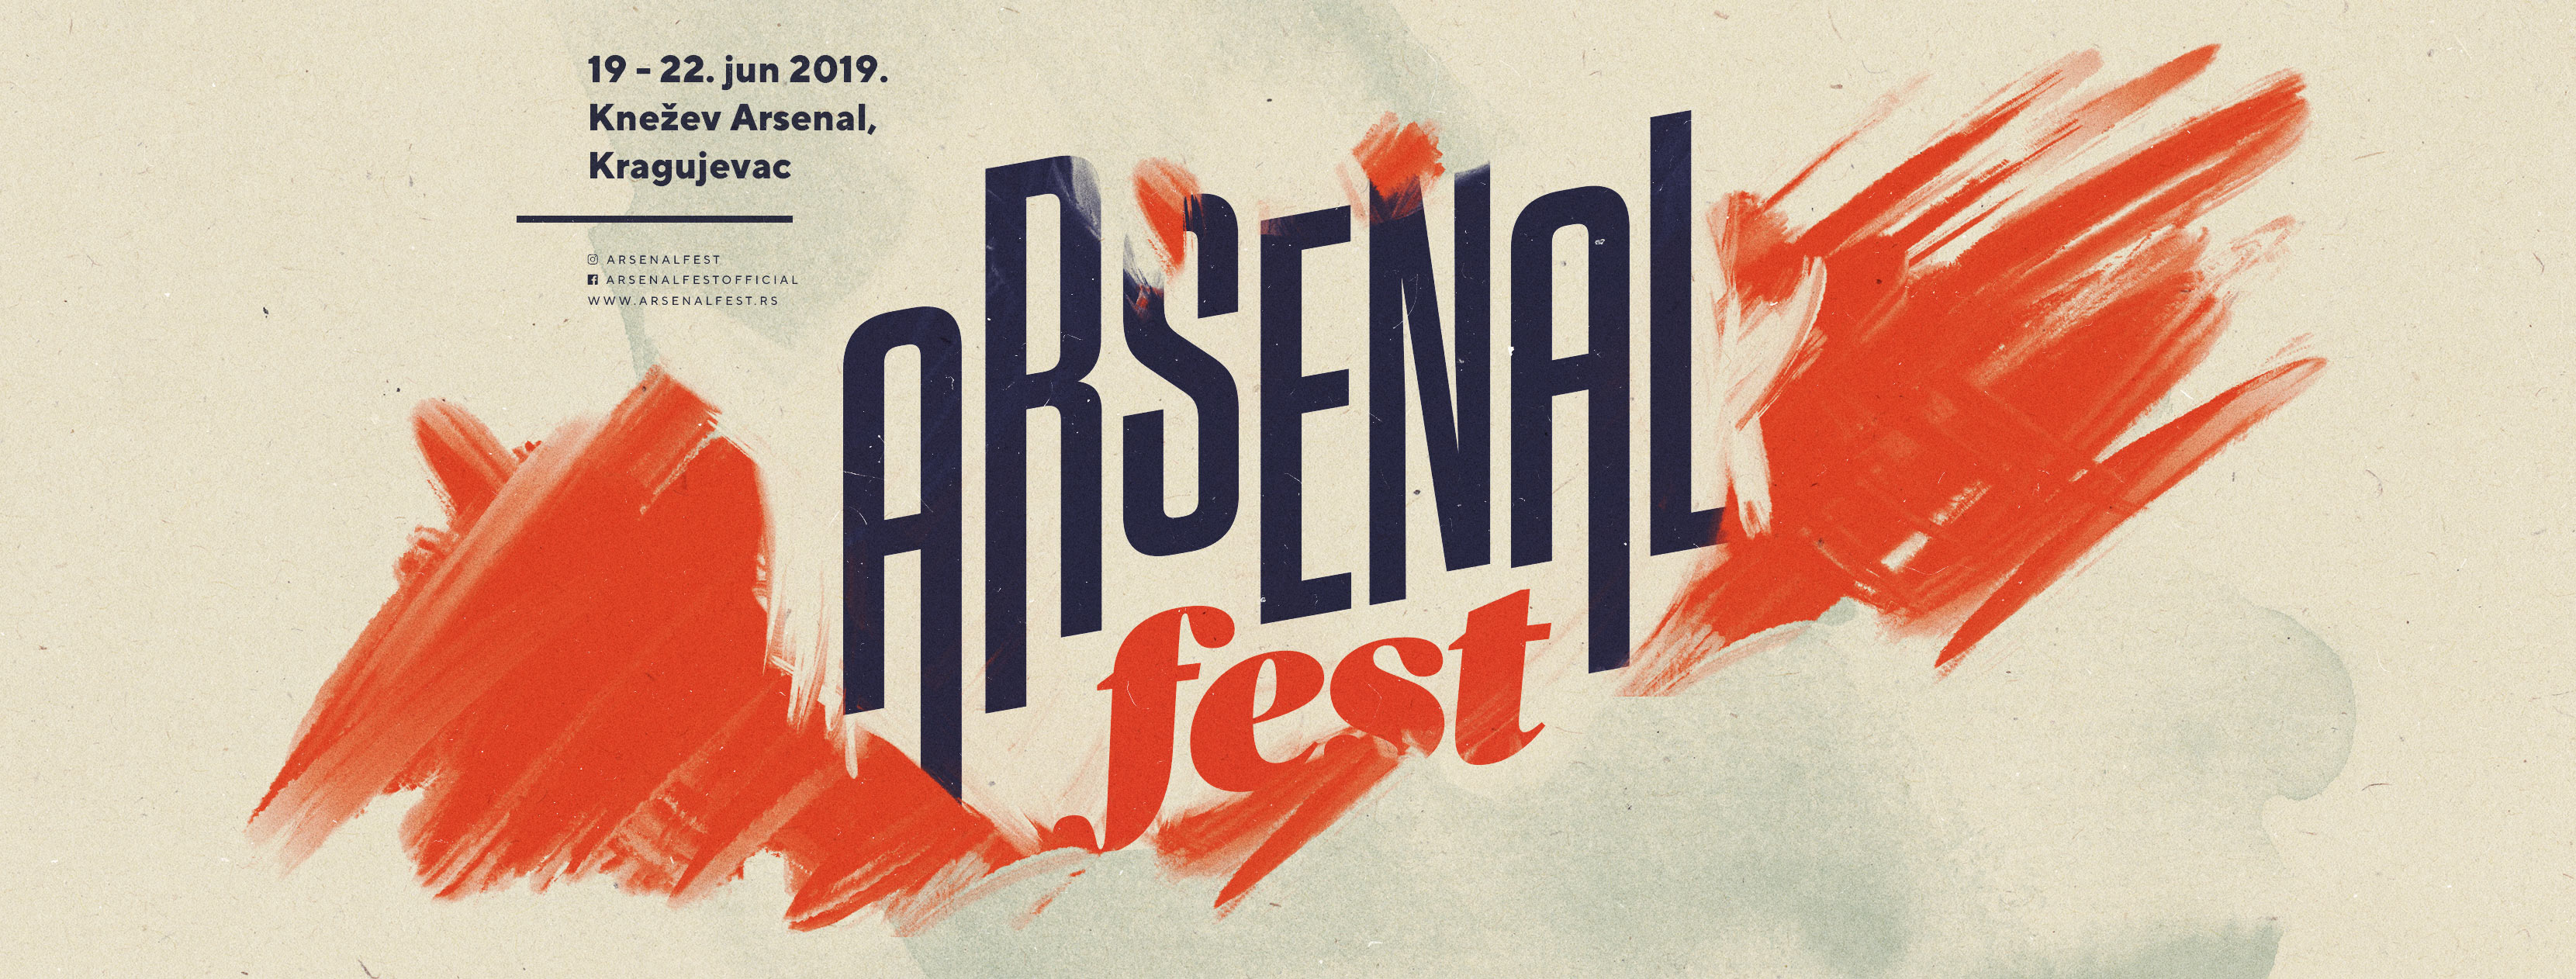 Arsenal Fest 09, 19 – 22.06.2019.